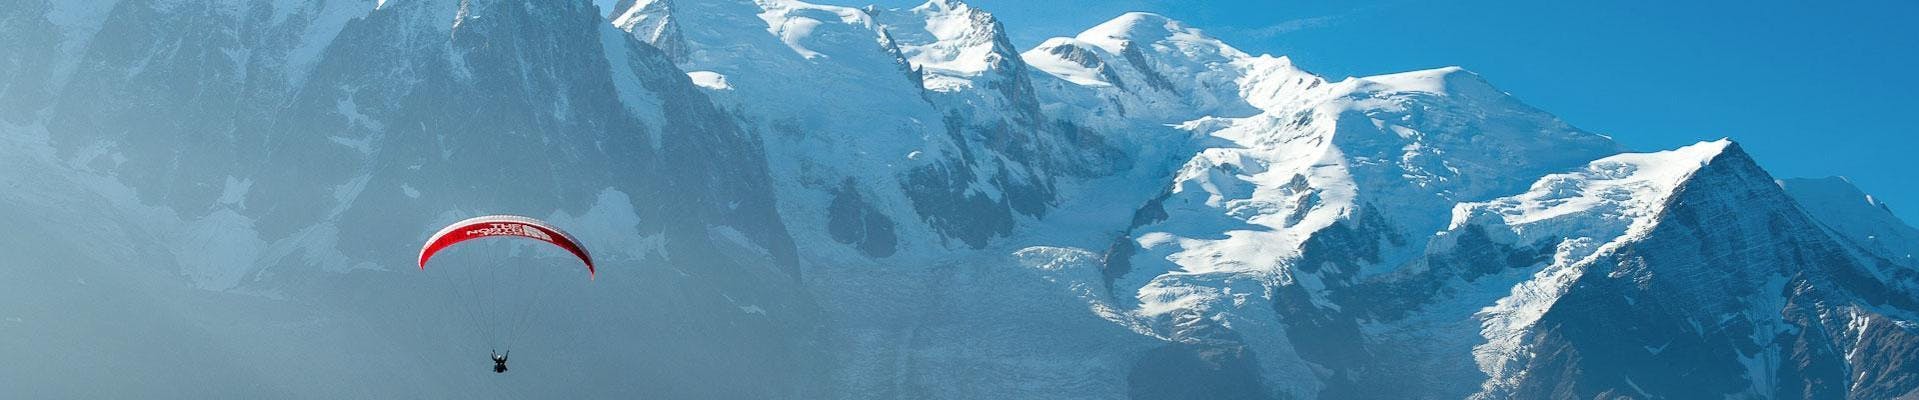 Volo acrobatico in parapendio biposto a Chamonix (da 12 anni) - Plan de l'Aiguille.